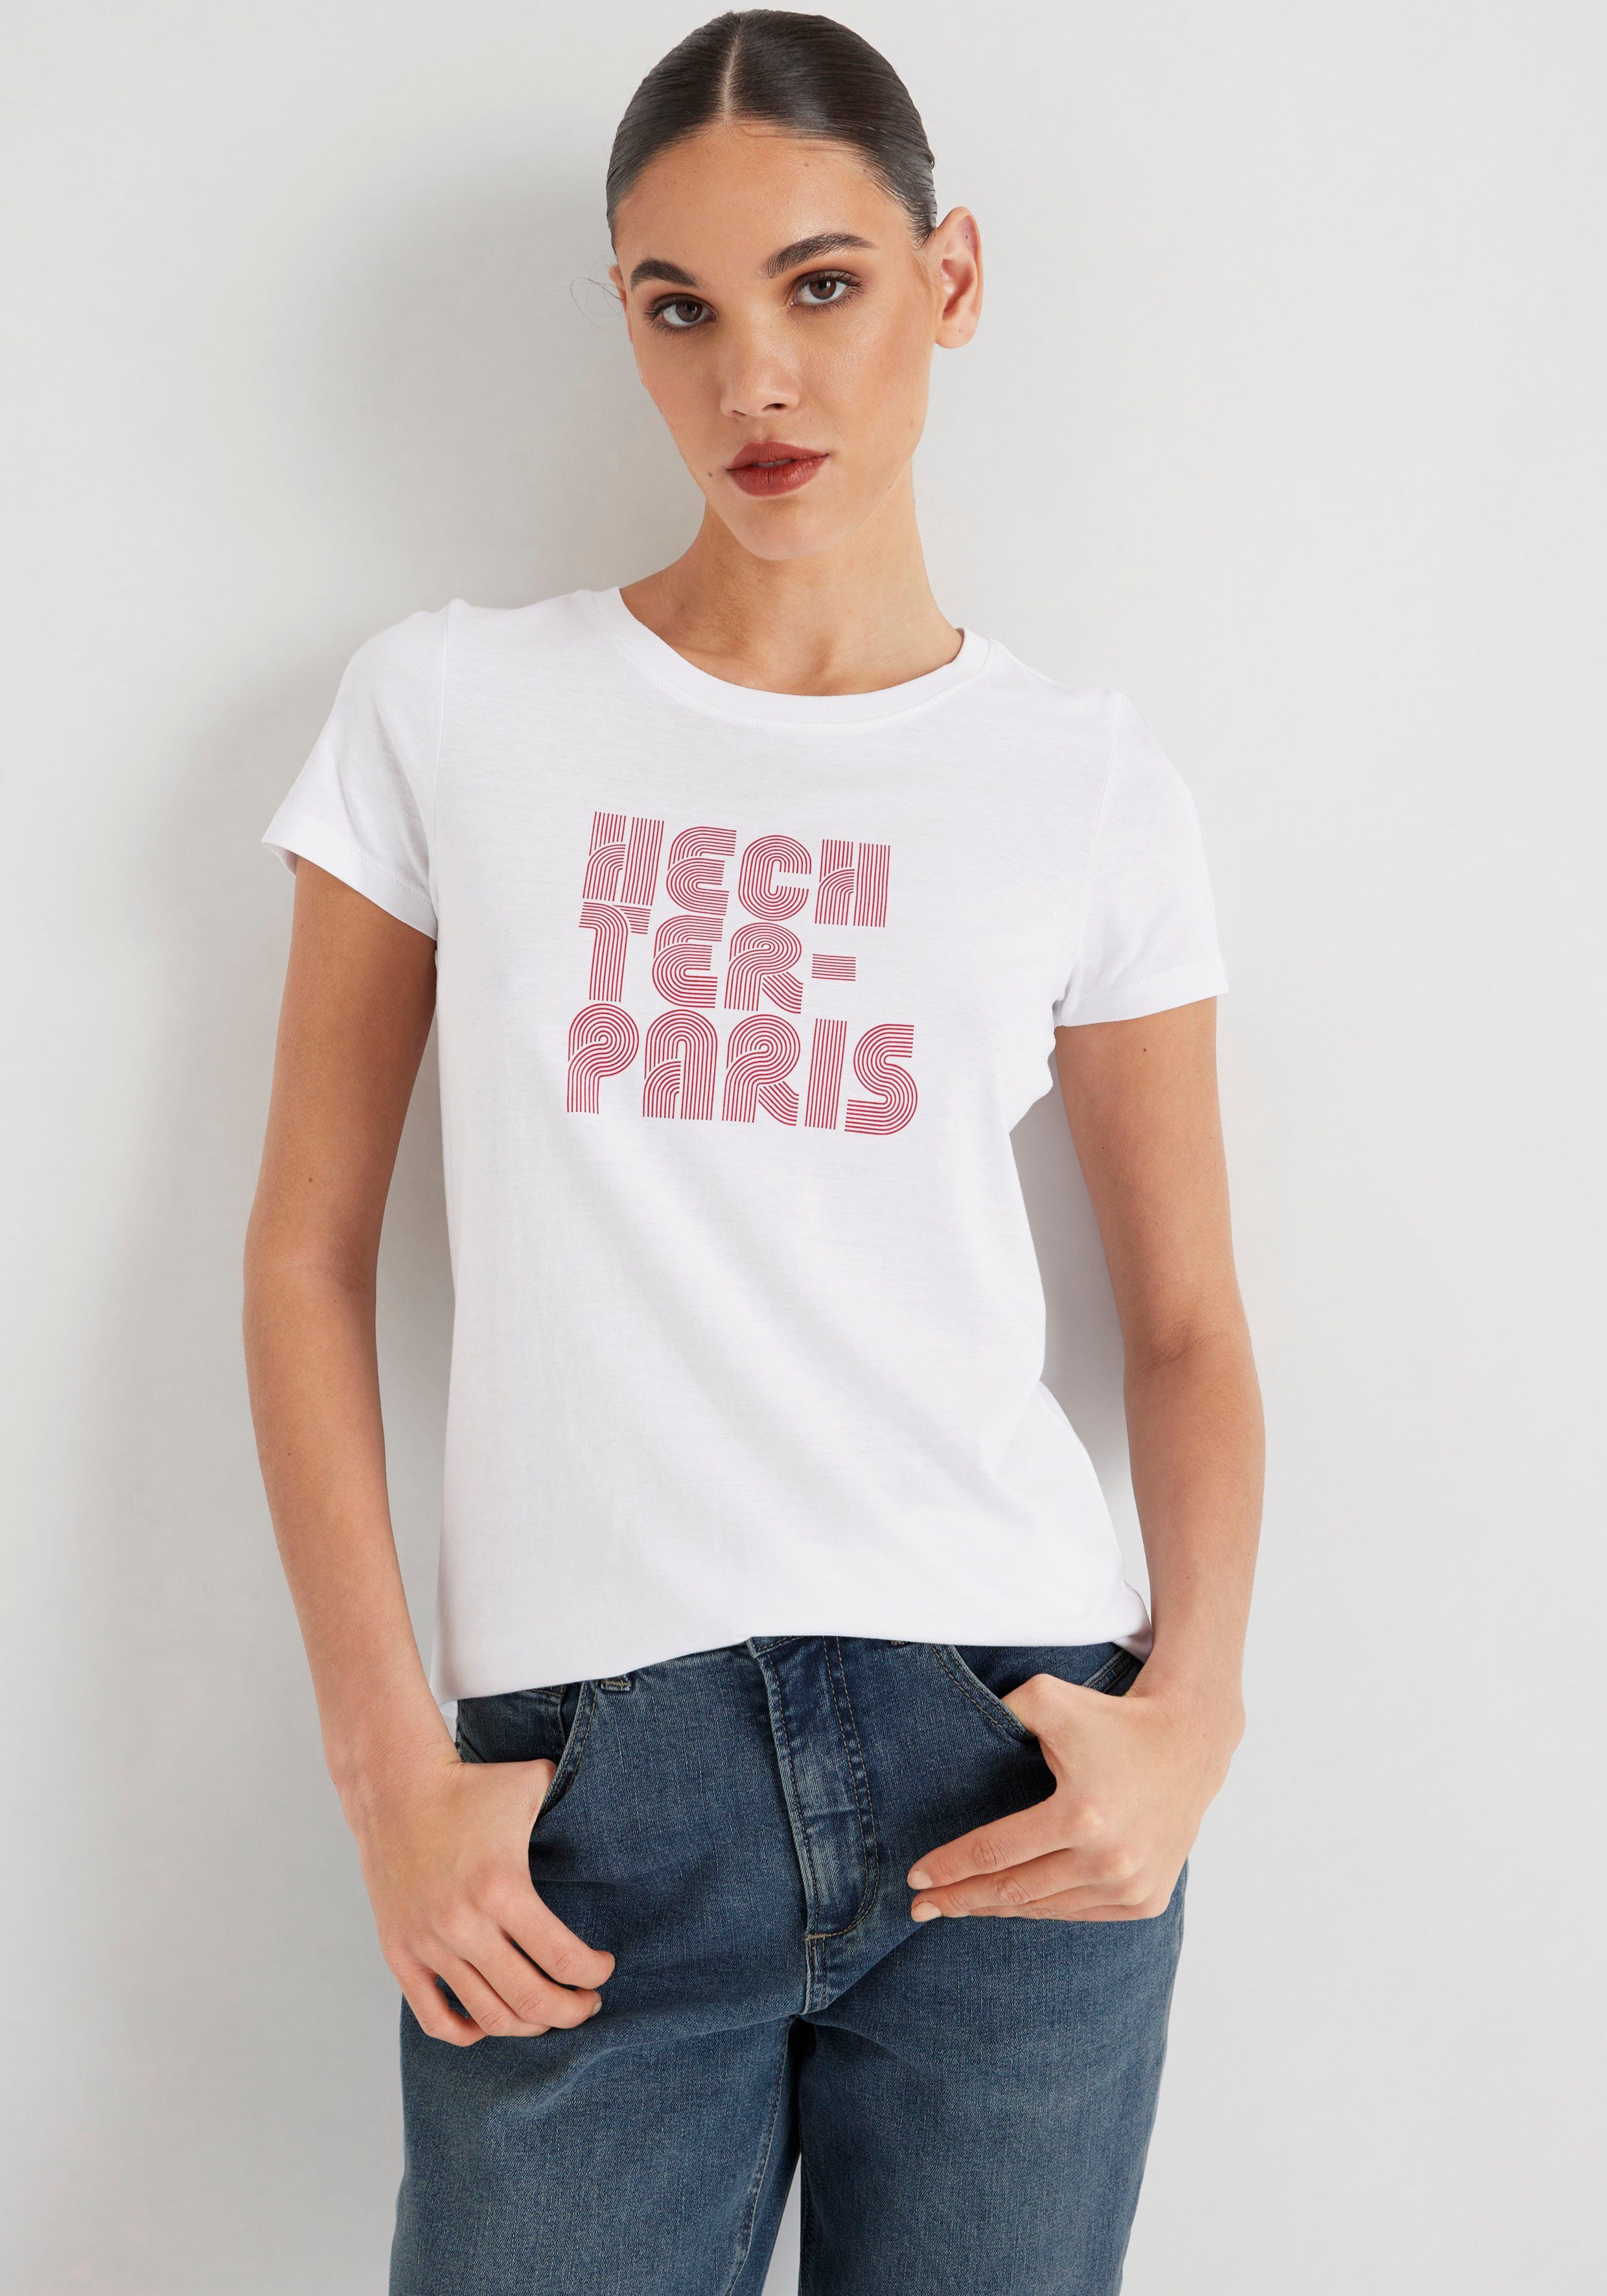 mit weiß-rot HECHTER T-Shirt PARIS Druck